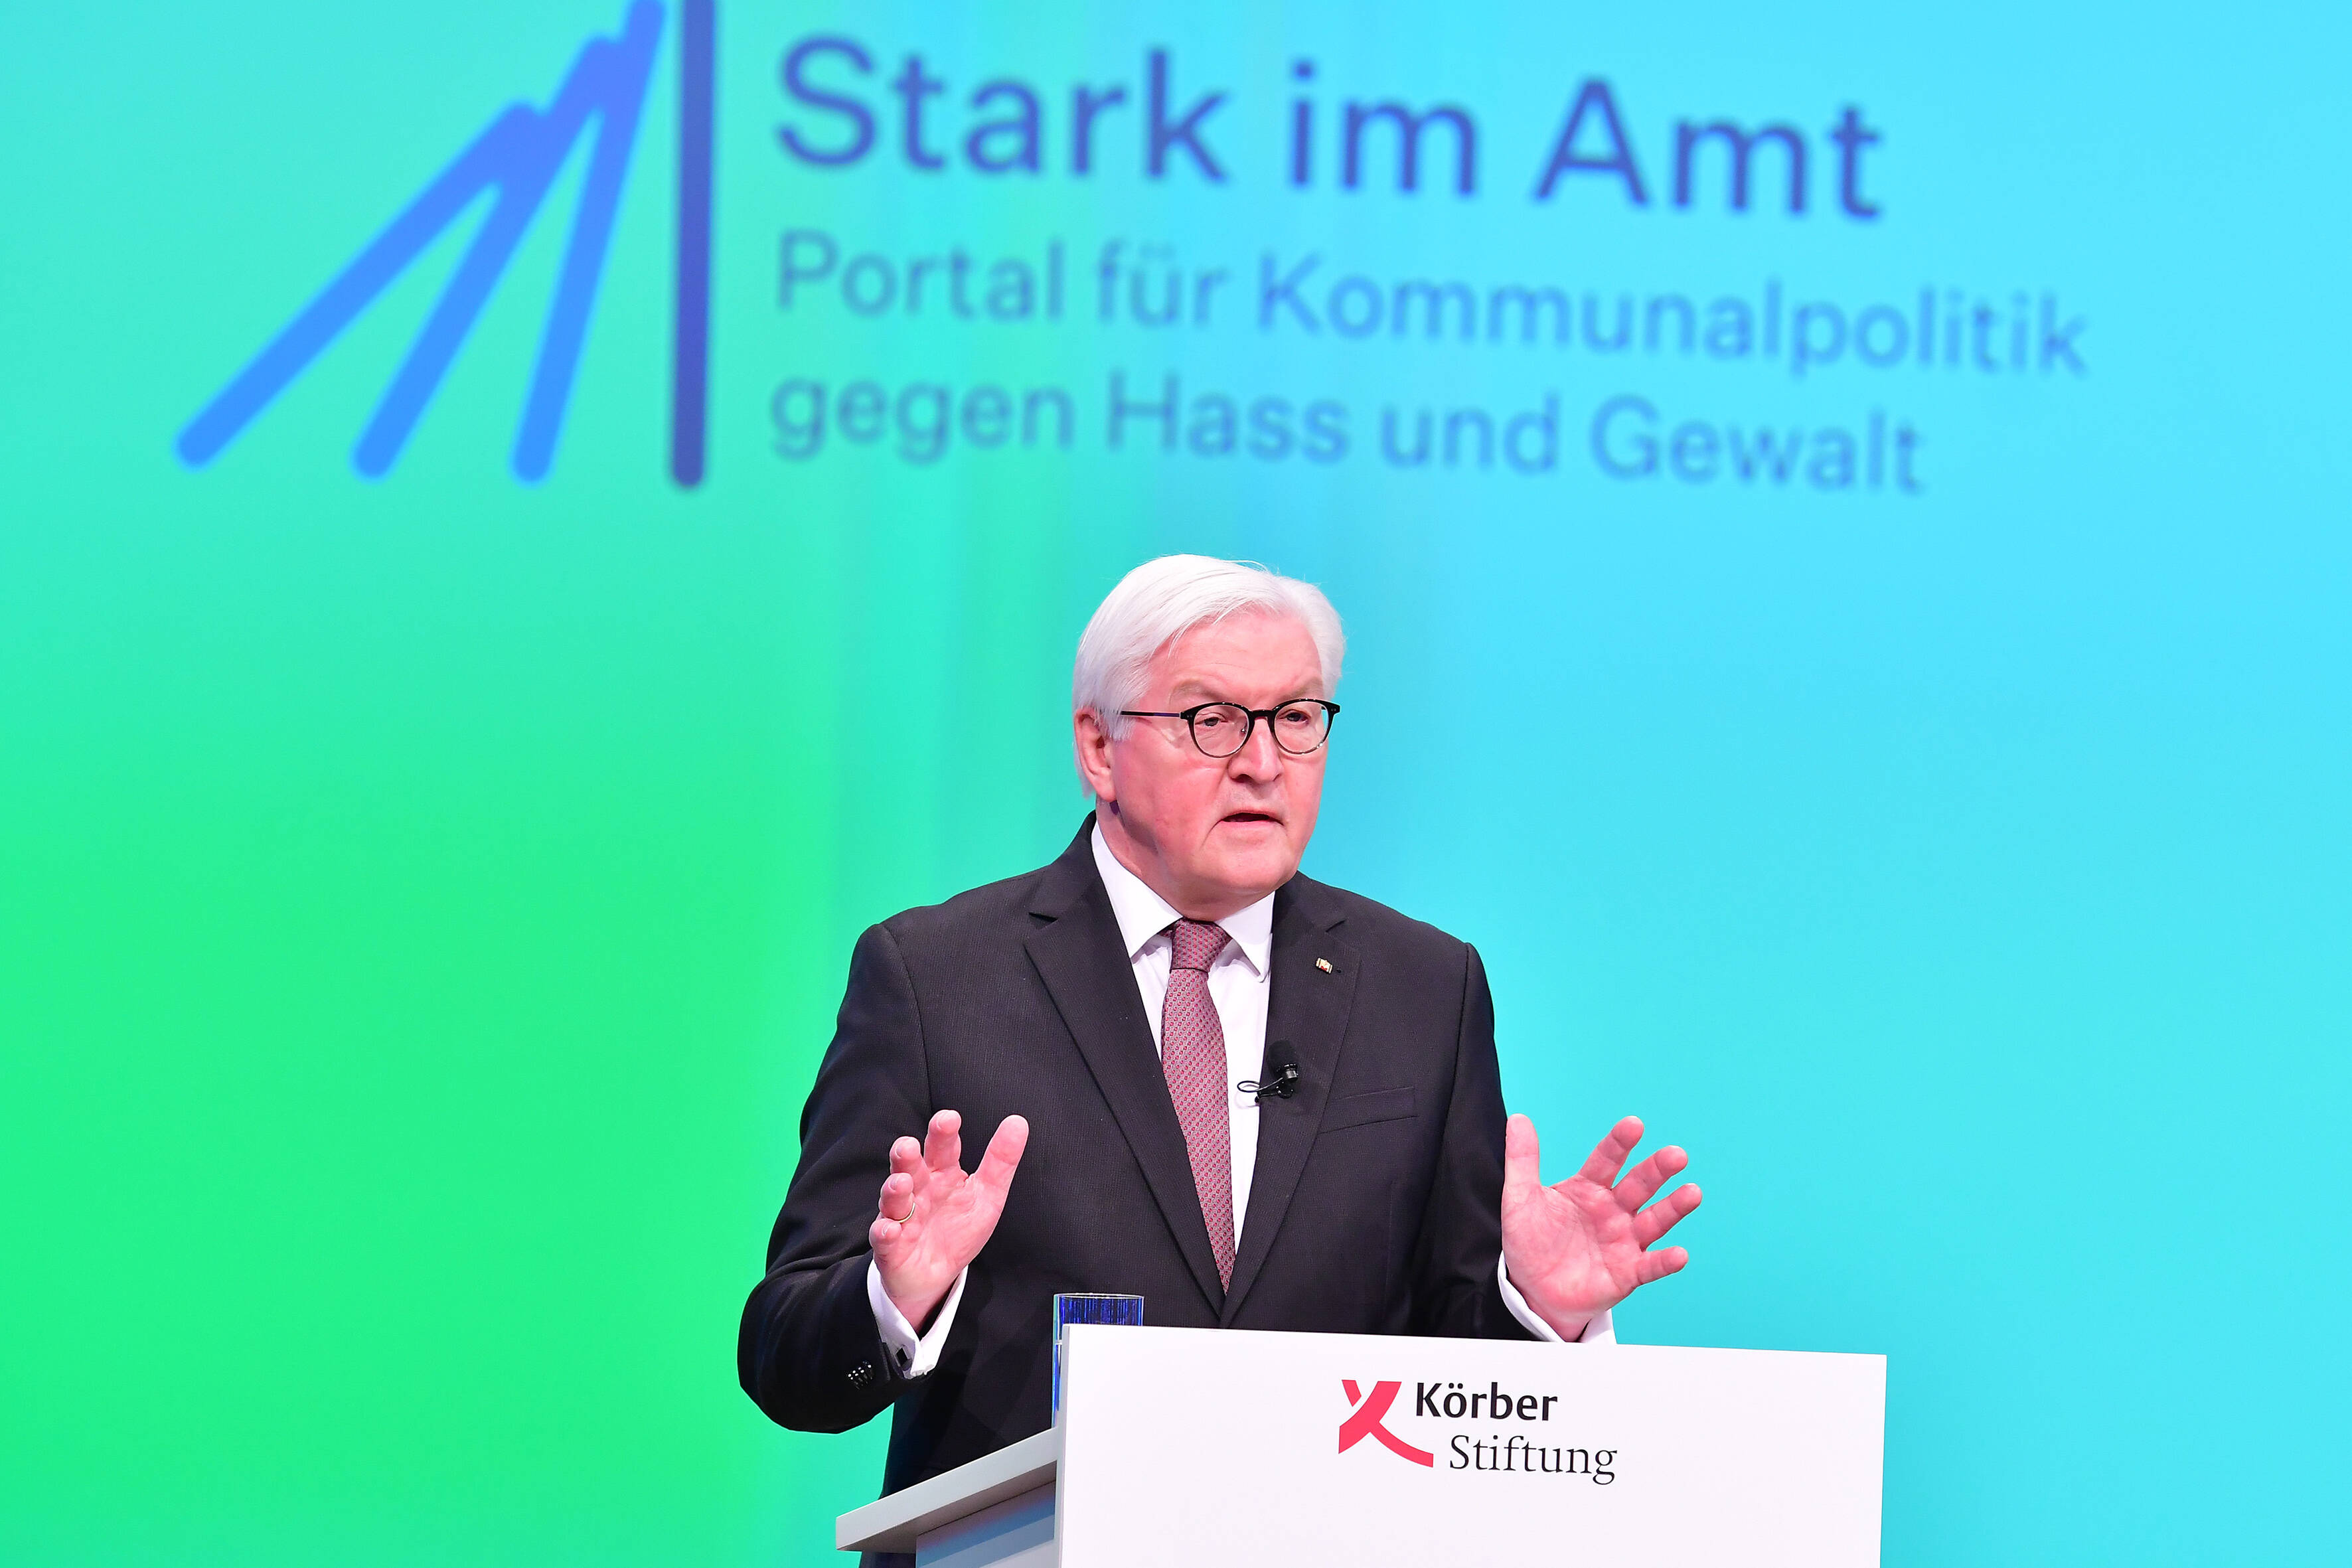 „Wir müssen verlorene Zivilität zurückerobern.“ Bundespräsident Frank-Walter Steinmeier hat am Donnerstag das Internet-Portal „Stark im Amt“ gestartet.